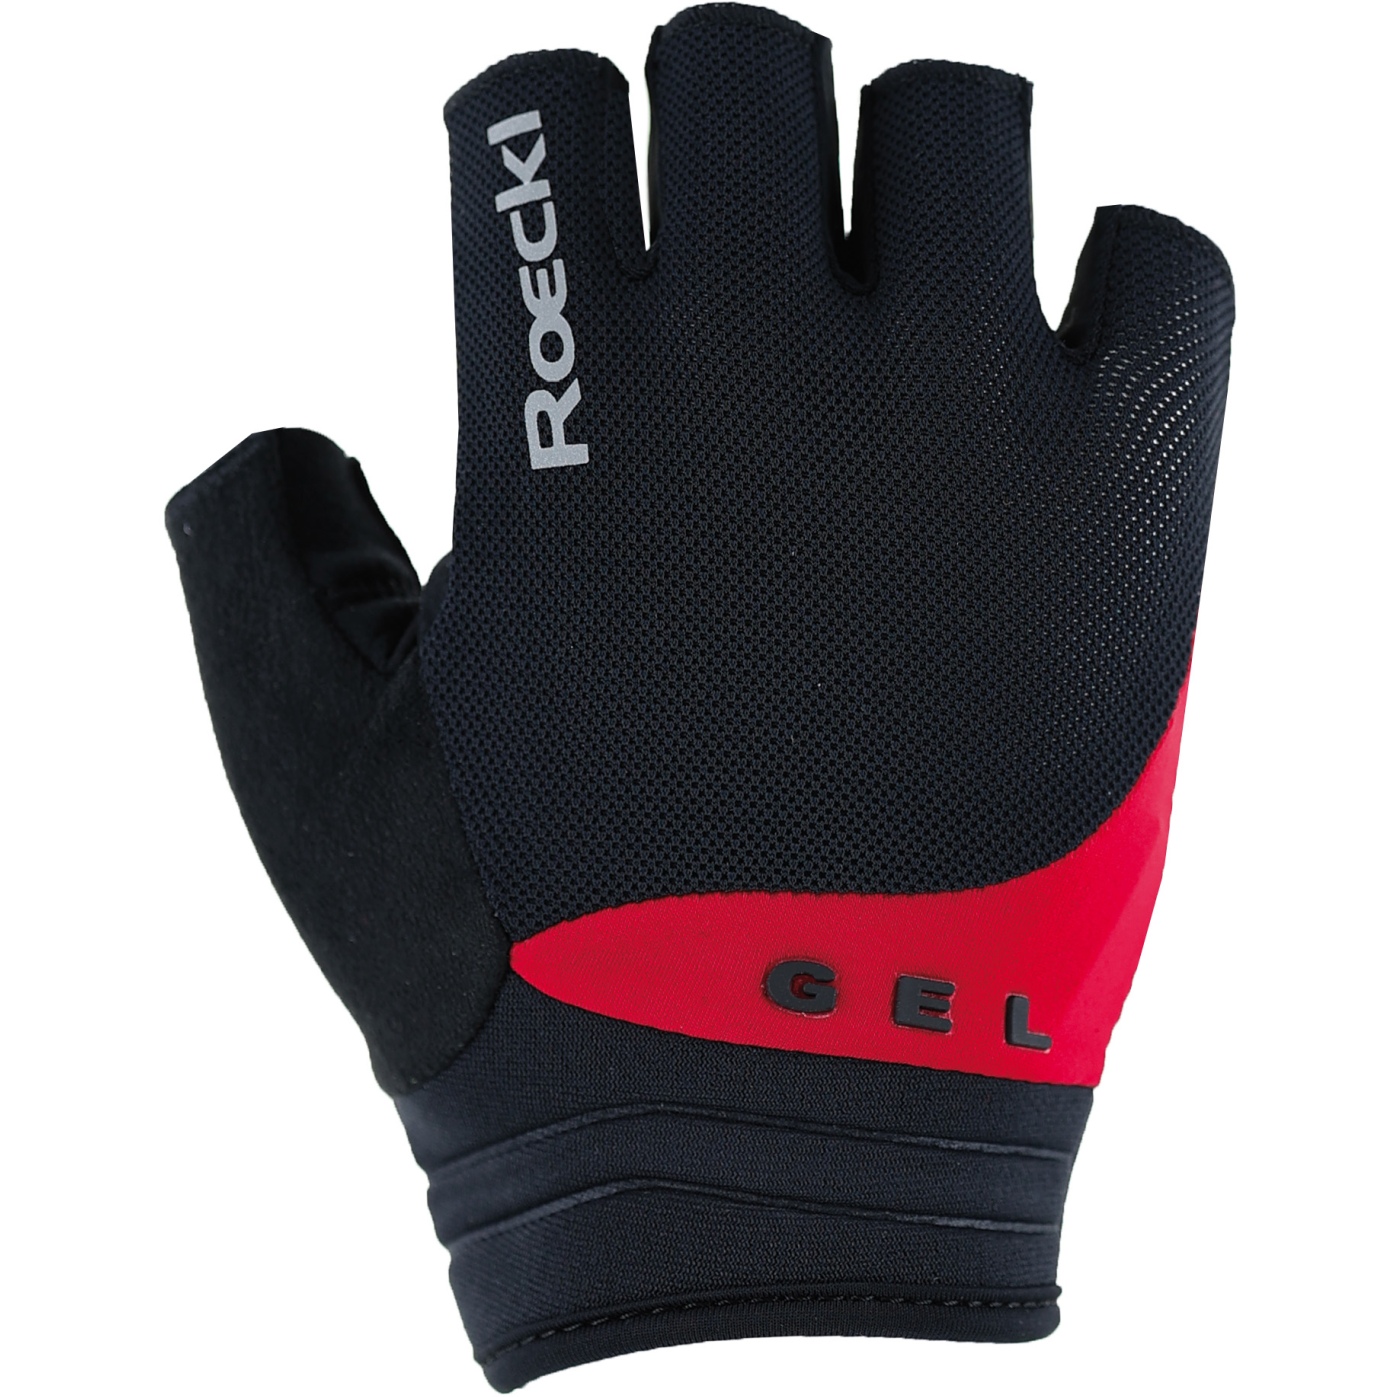 Productfoto van Roeckl Sports Itamos 2 Fietshandschoenen - zwart/rood 9300